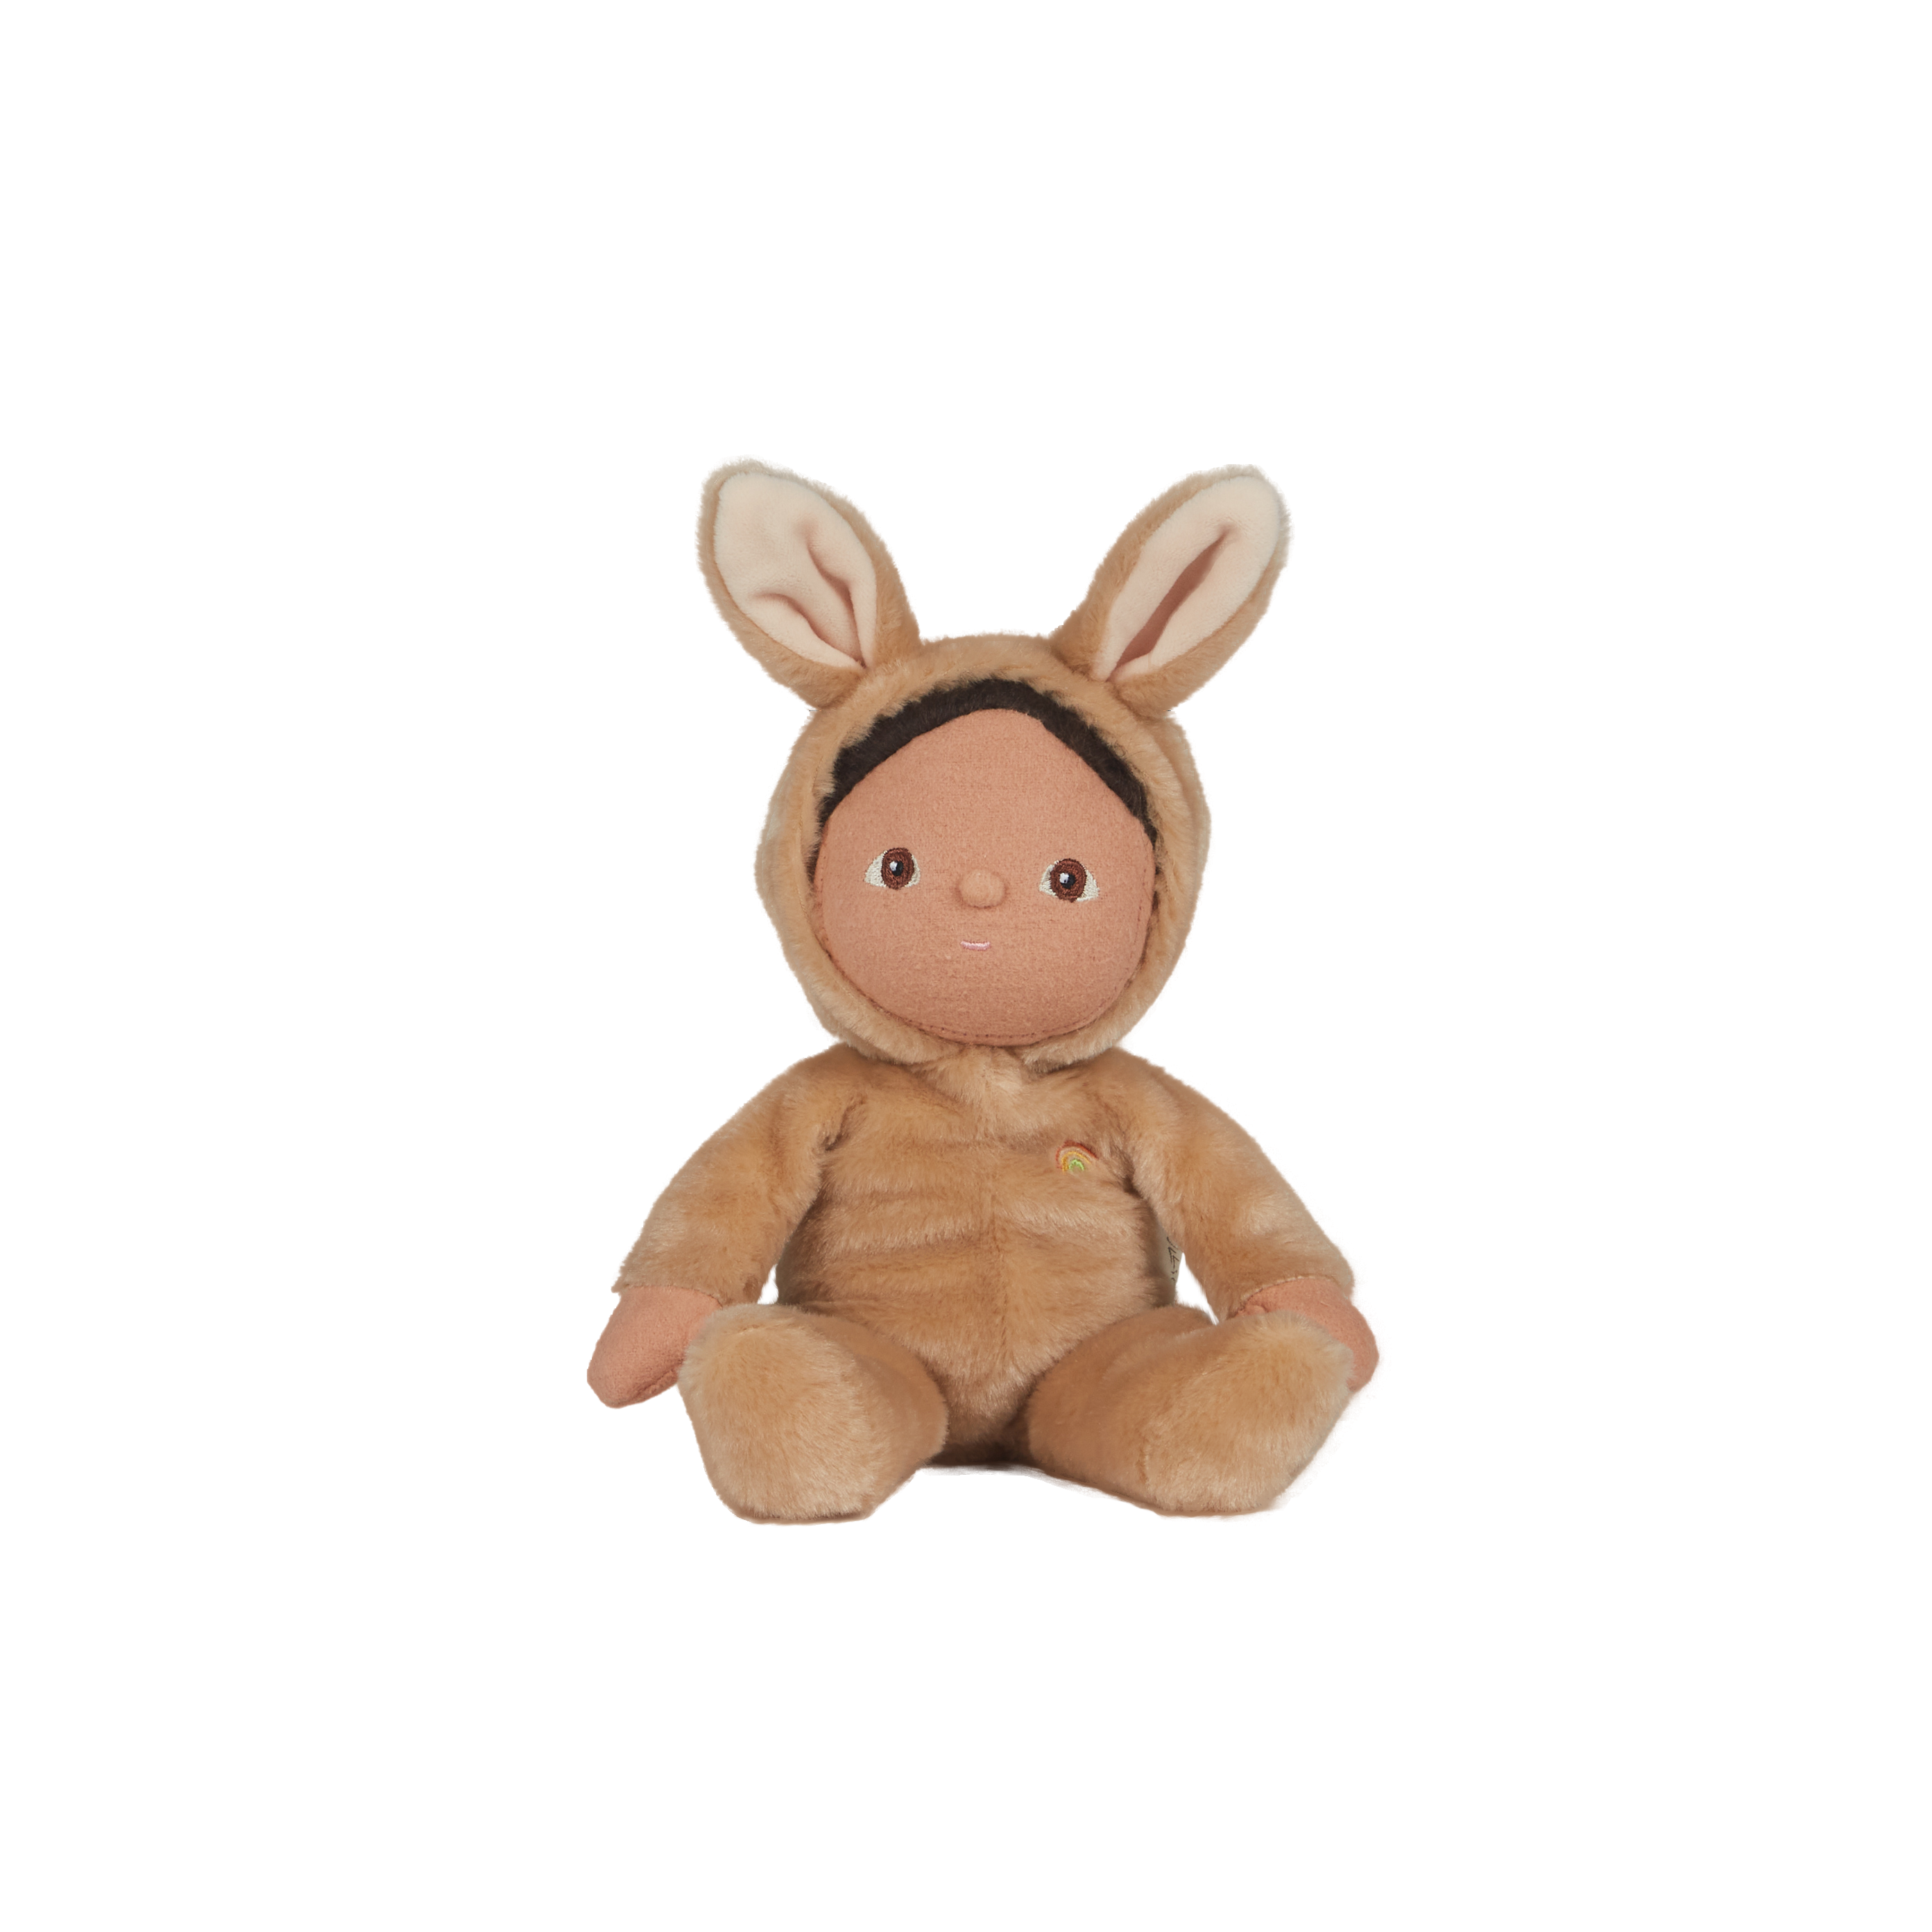 Olli Ella Fluffle Family Dinky Dinkum Doll – Bucky Bunny